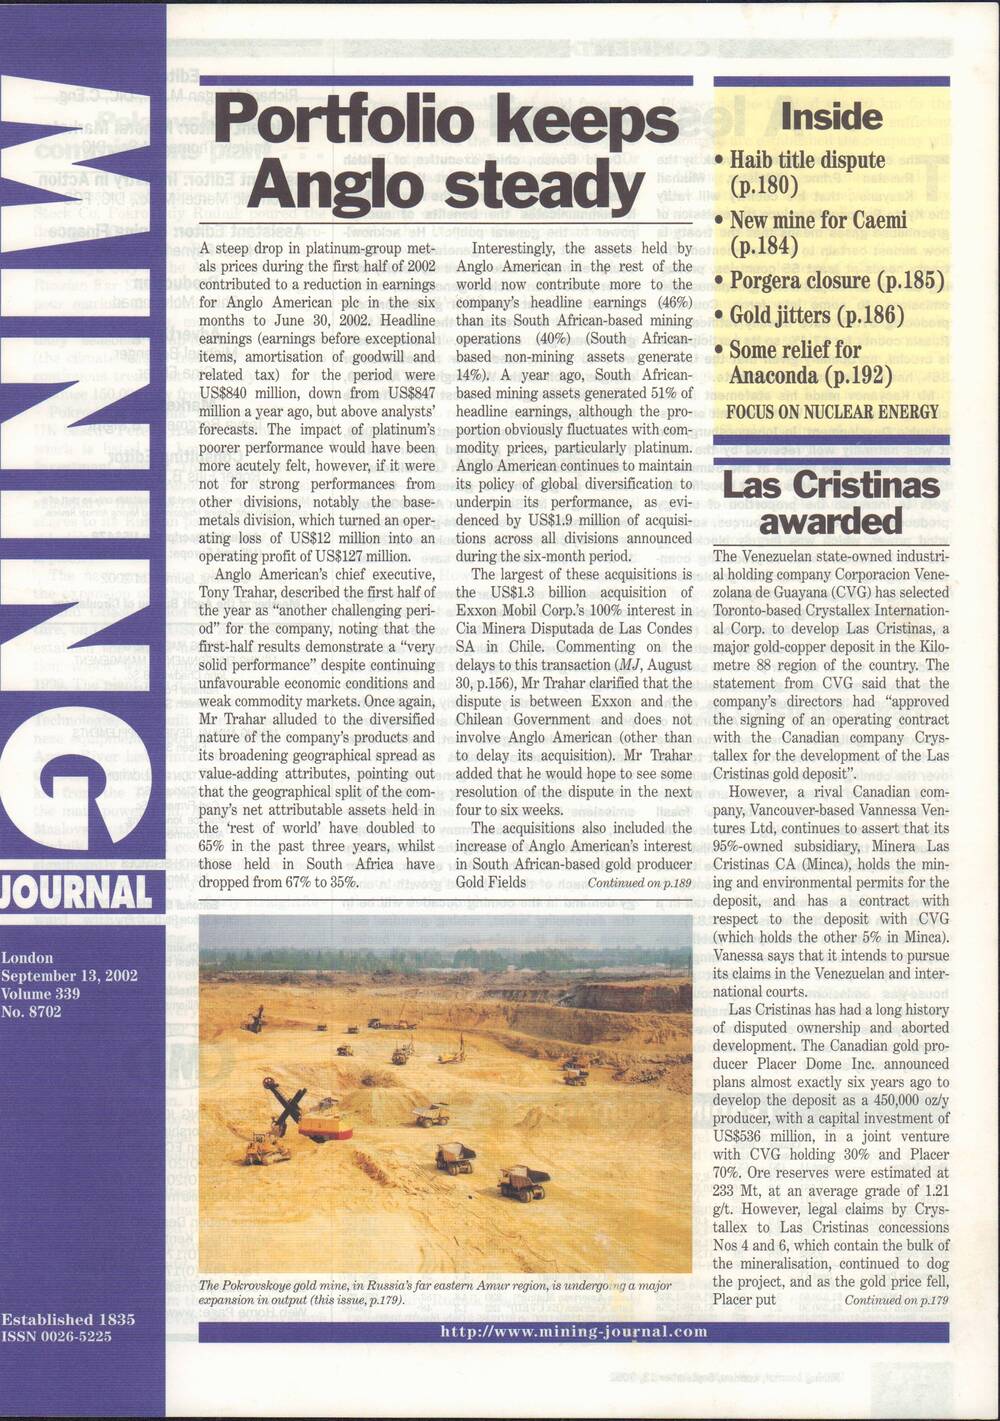 Газета Майнинг Издательство Лондон, 13 сентября 2002 года.